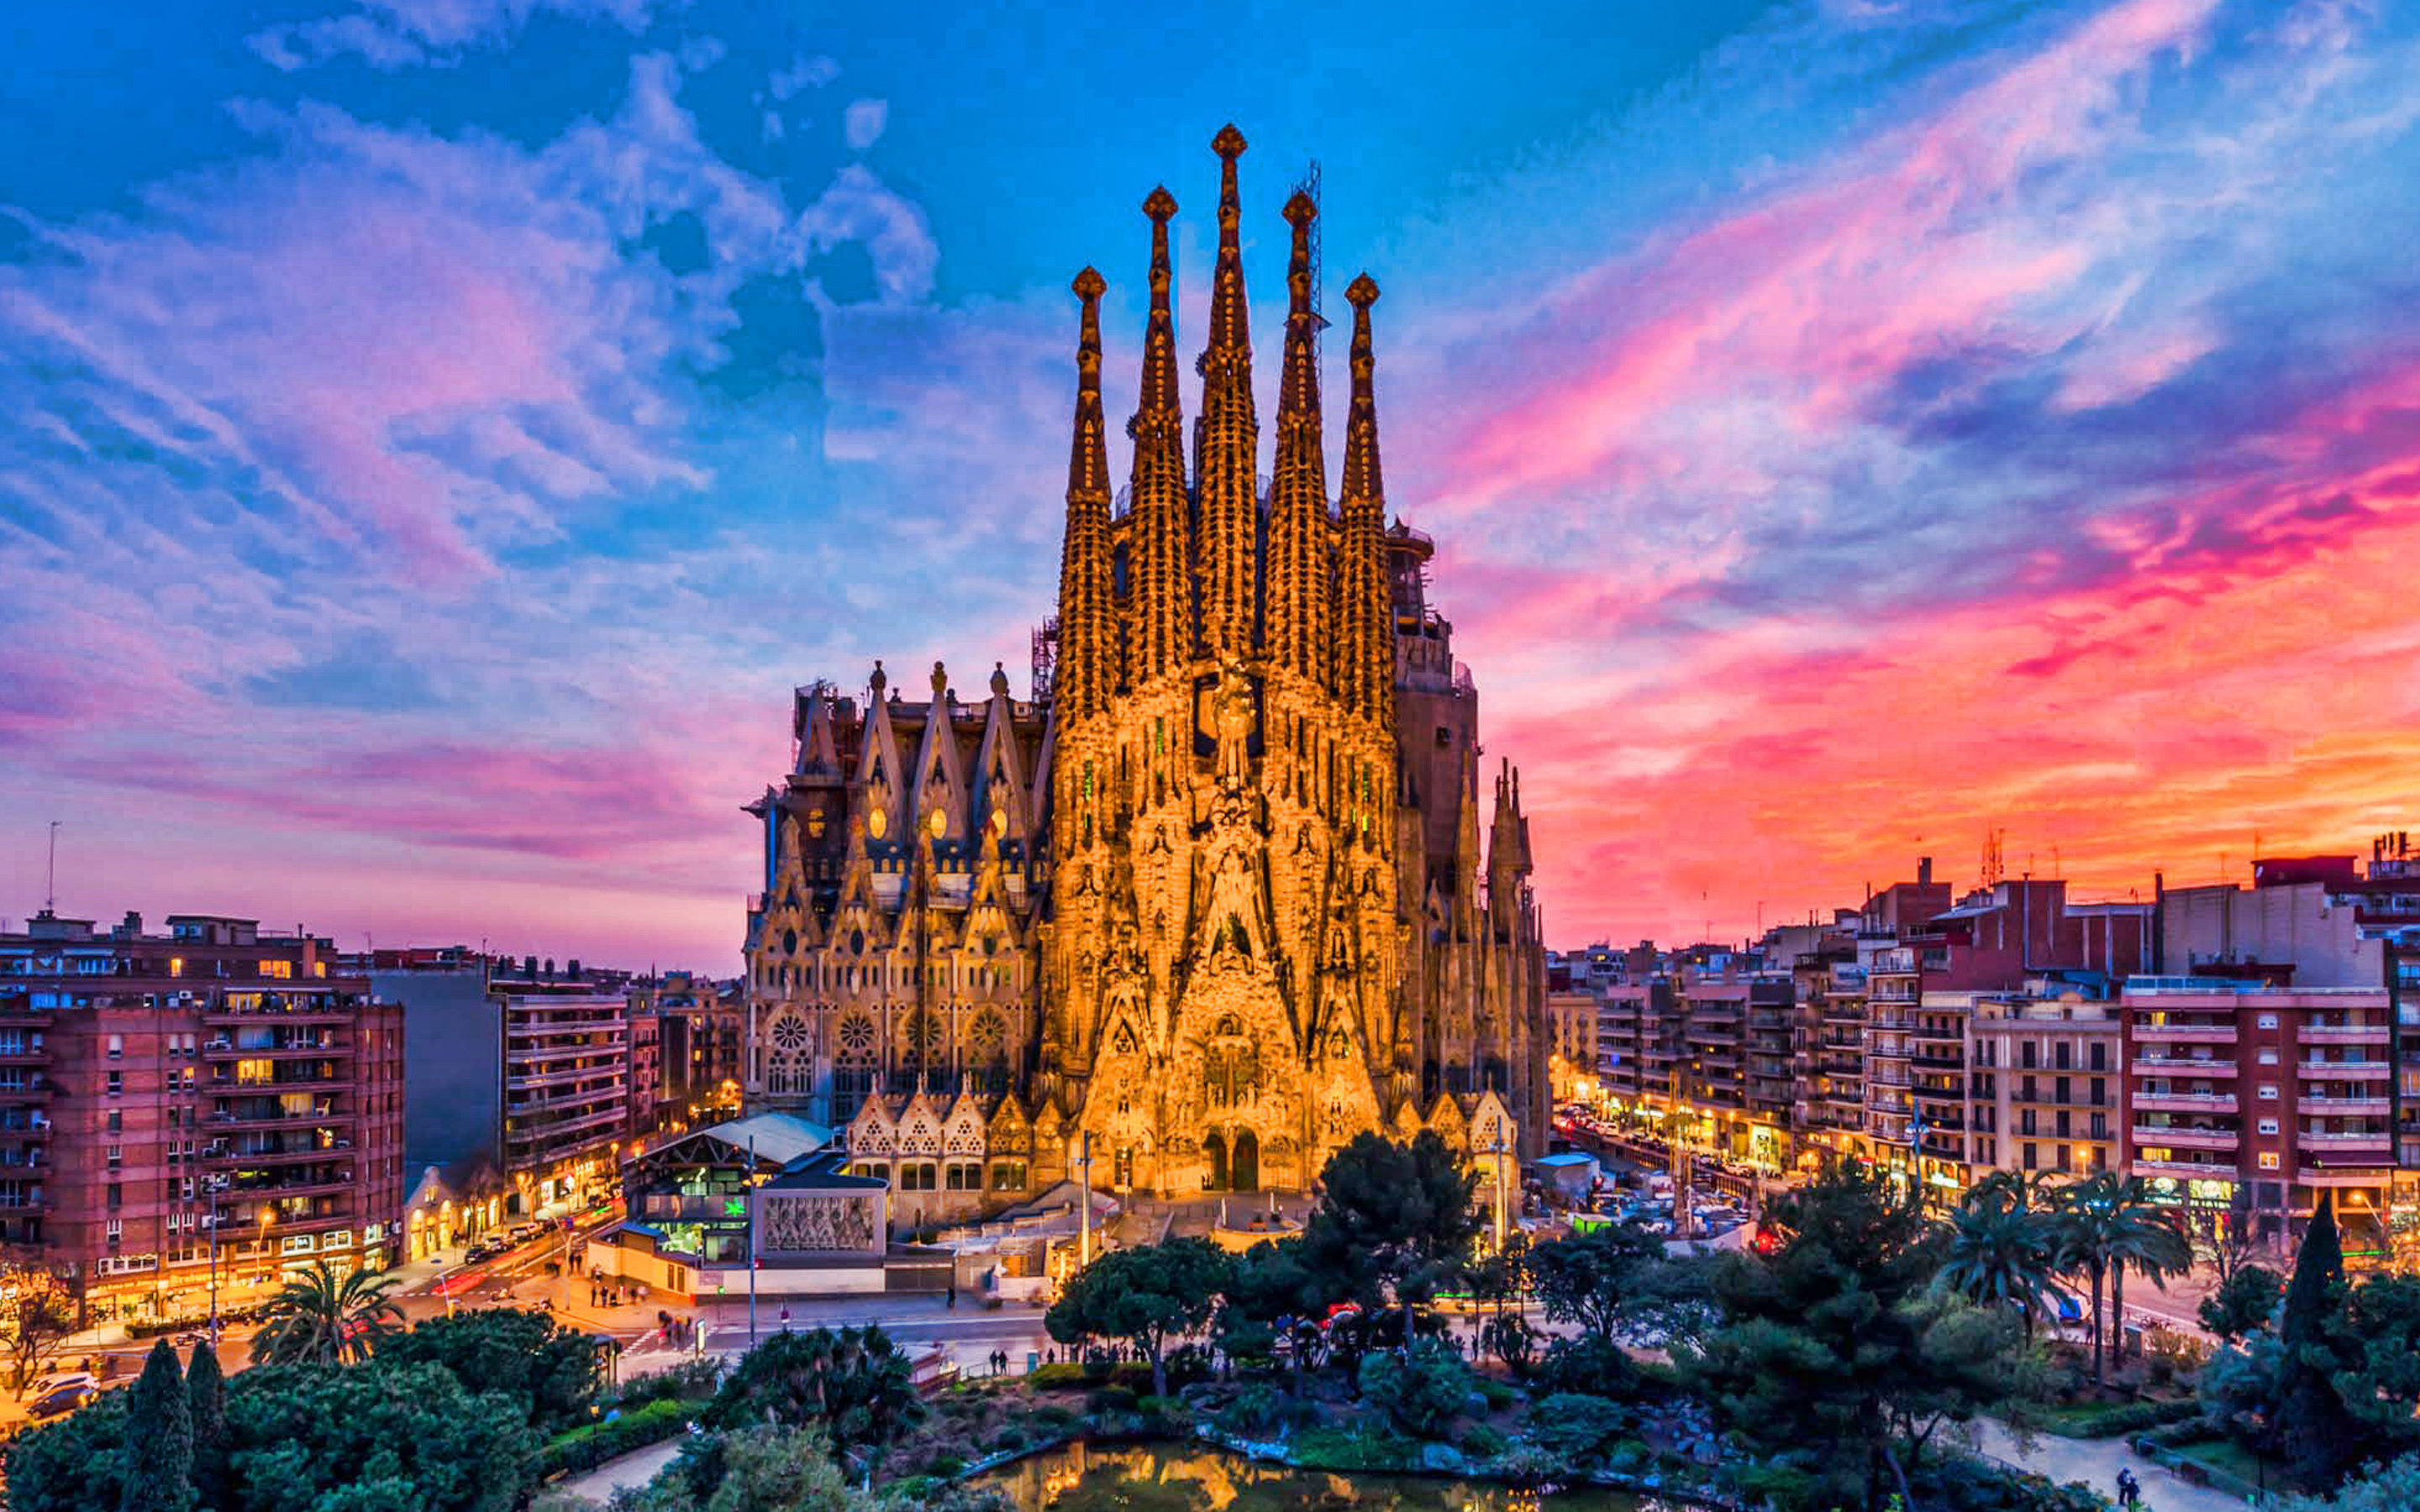 ダウンロード画像 聖家族 バルセロナ カタルーニャ 夜 夕日 町並み バルセロナのランドマーク 大聖堂 サグラダファミリア ローマカトリックのマイナ大聖堂 画面の解像度 x1800 壁紙デスクトップ上